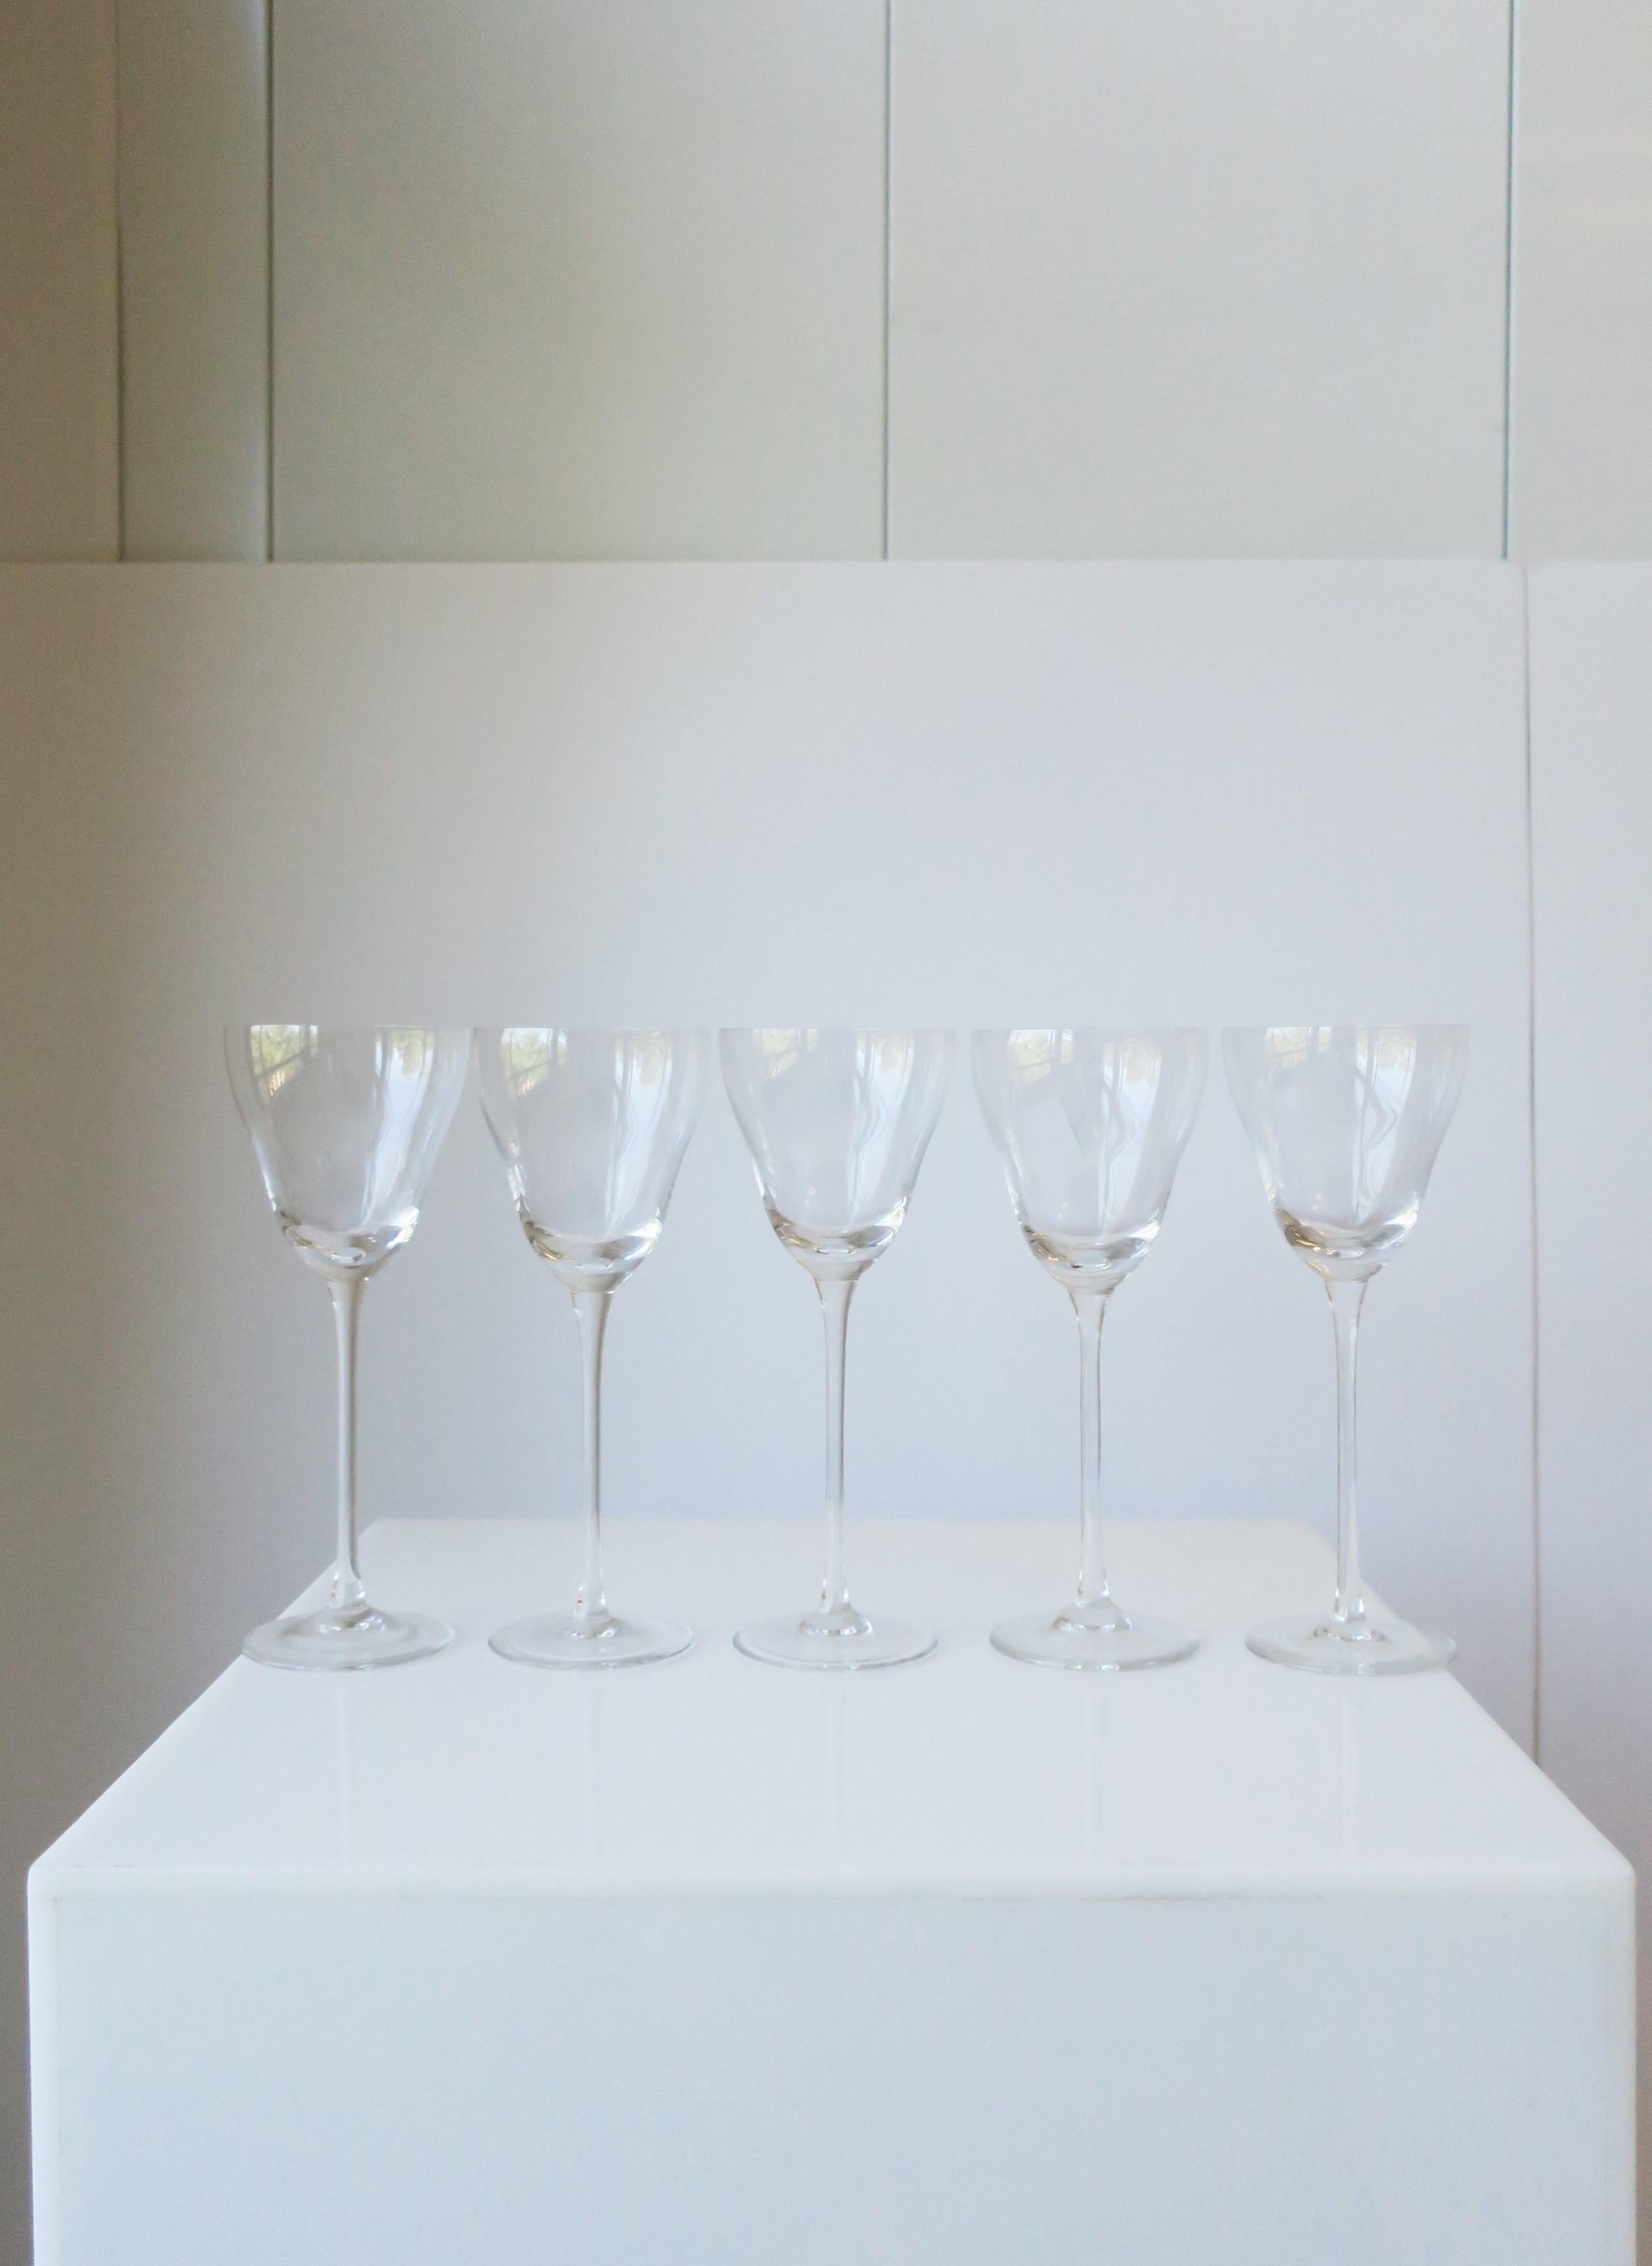 Magnifique ensemble de cinq (5) verres à cocktail ou à apéritif en cristal allemand Rosenthal Studio-Line, vers le milieu du XXe siècle, Allemagne. Magnifique verrerie de bar en cristal et un excellent ajout à tout bar, chariot de bar, etc. Chacune